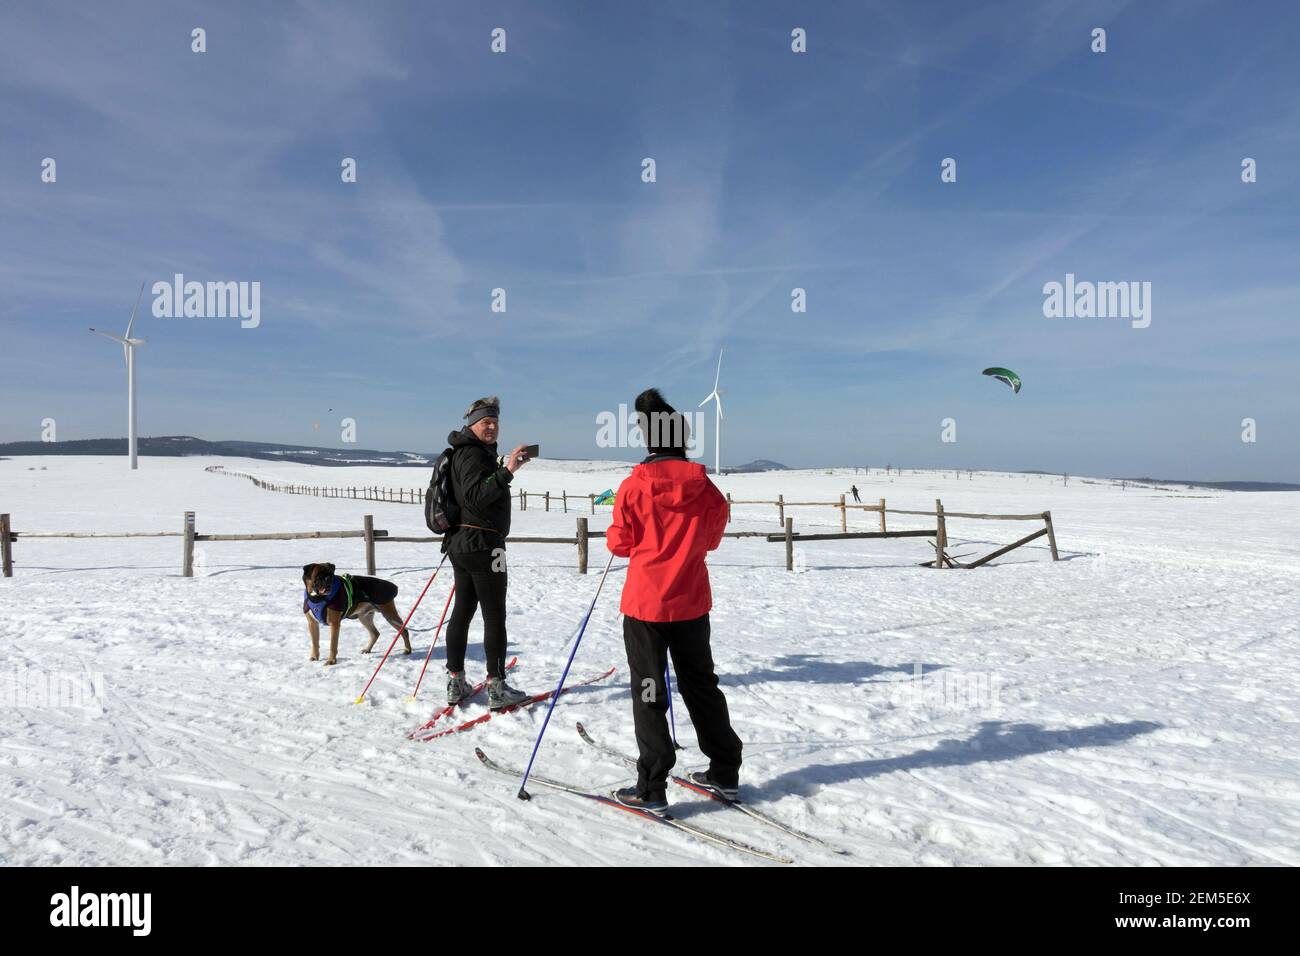 Wintersport Lifestyle, Senioren Paar Skifahrer, Mann Frau Hund auf Langlaufloipe in verschneite Landschaft Stockfoto